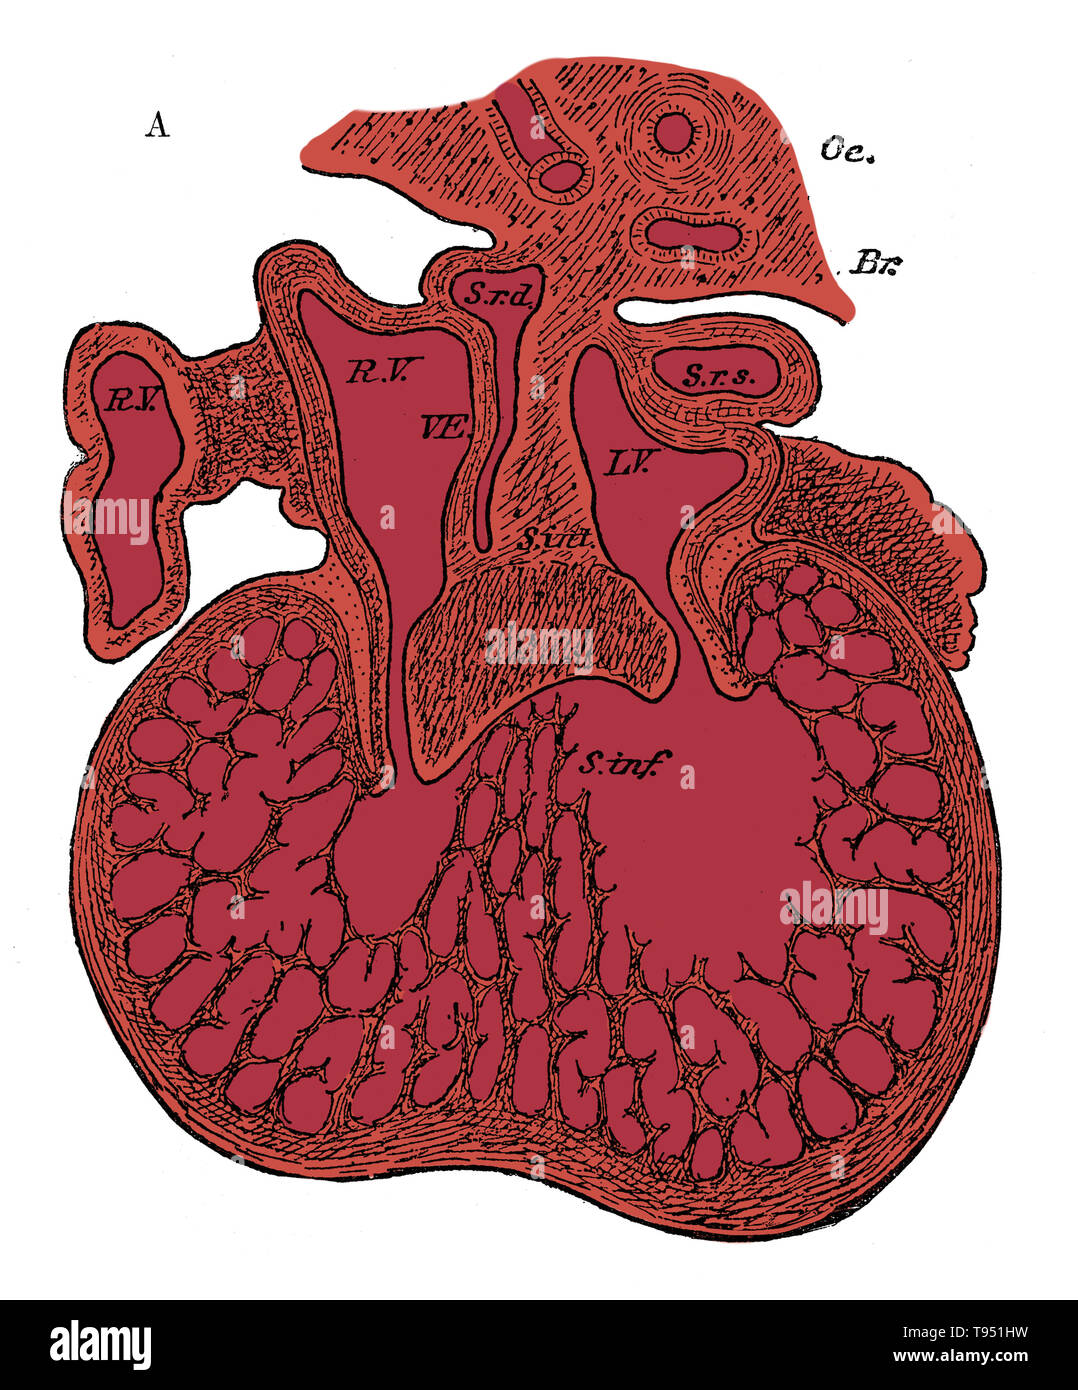 Abschnitt durch das Herz des menschlichen Embryos, die Bildung der kardialen Septen und die auriculo-ventrikulärer Ventile, 5 bis 6 Wochen. R. V, der rechten Ohrmuschel; L.V, linken Ohrmuschel; s. a. d, rechts Horn von Sinus; Sr s, links Horn von Sinus; s. int, Septum superior und Endokardialen Kissen (Septum intermedium); s.inf, Septum ermittelt; Diese ventriculorum Septum, wie auch der Großteil der Ventrikel, ist ein MUSKULÖSER schwamm in diesem Stadium. Oc, Speiseröhre; Br, bronchus. Stockfoto